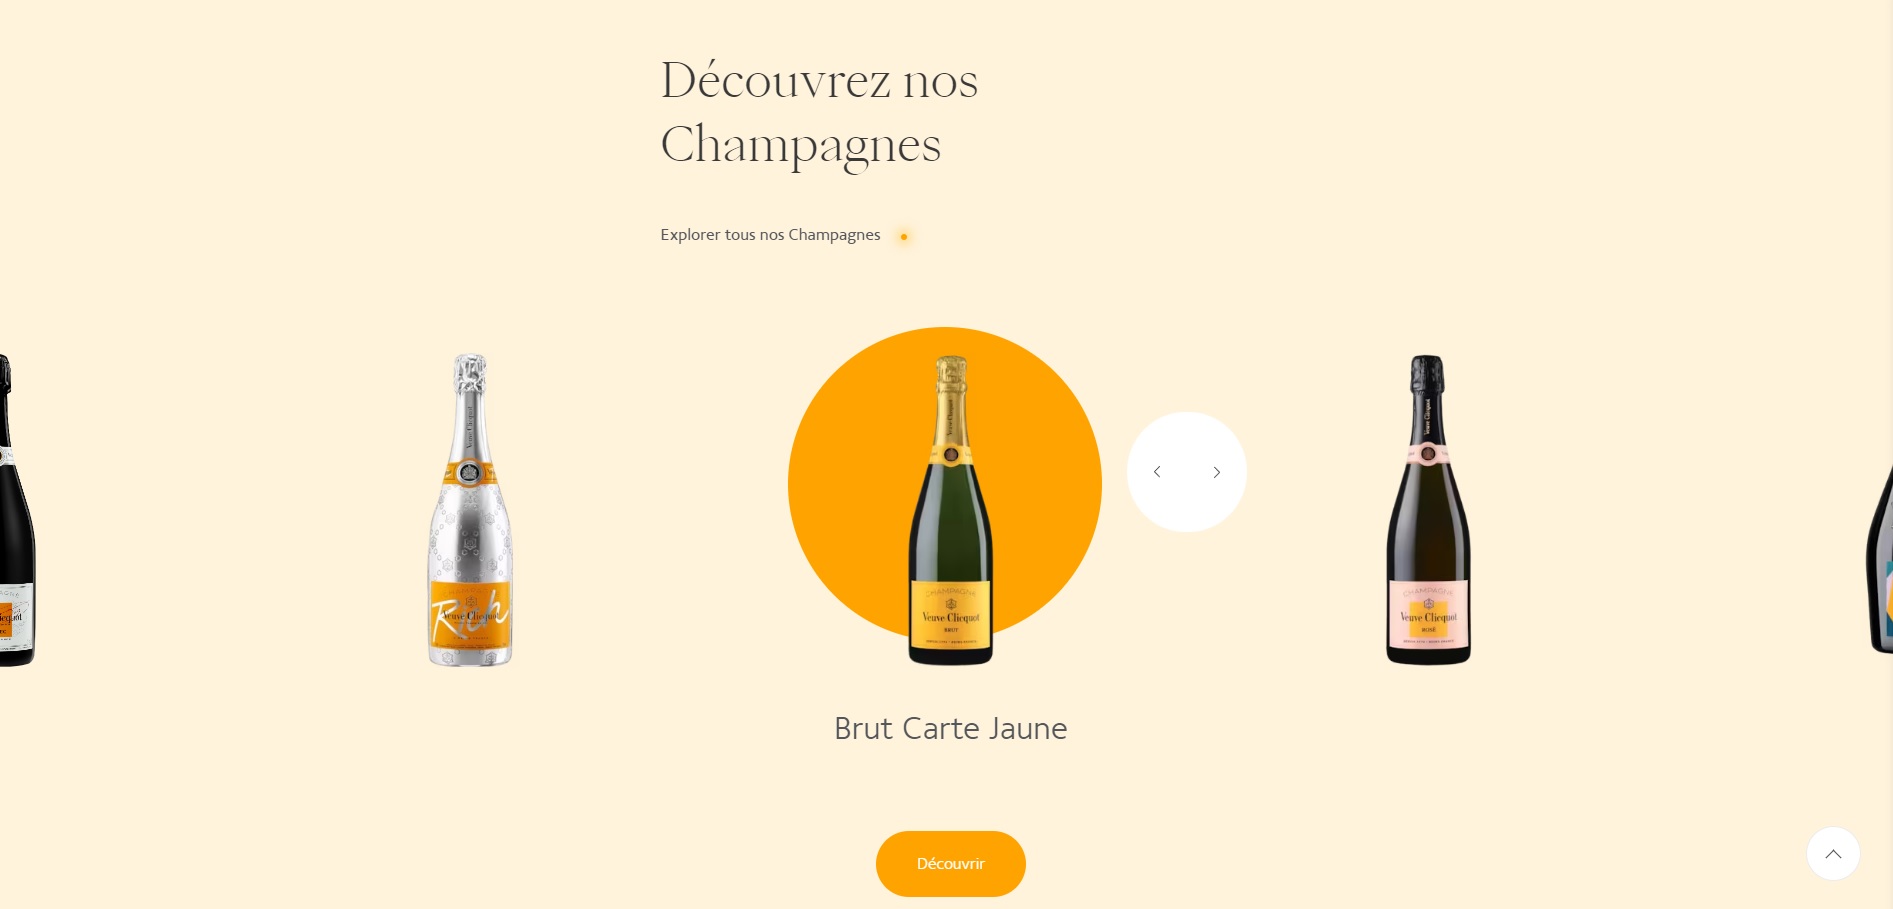 les champagnes veuve clicquot entre innovation et excellence